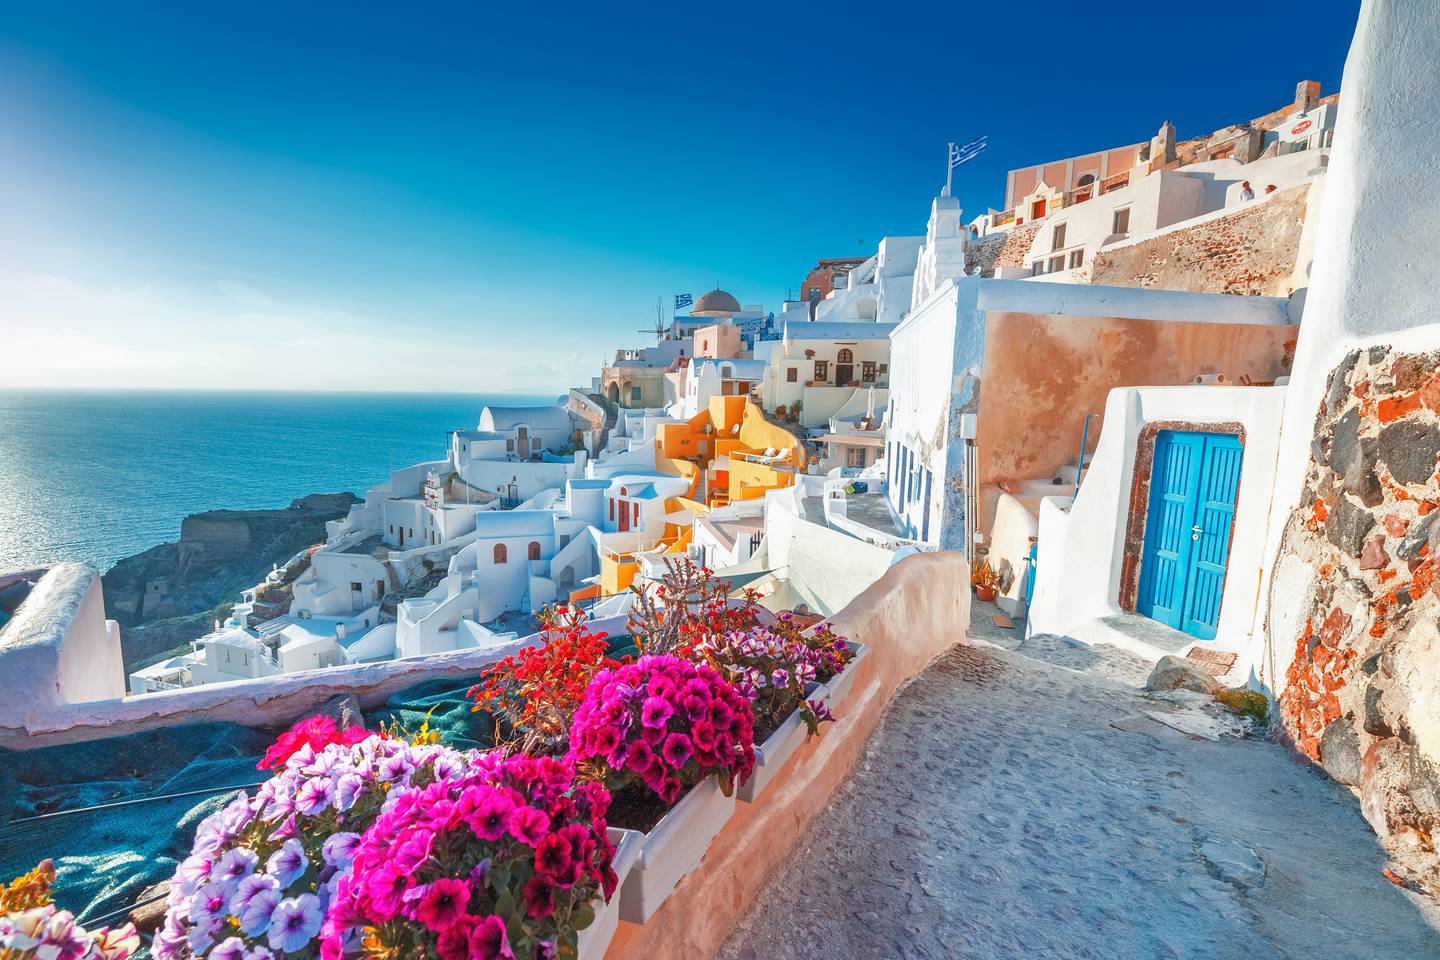 Bargain summer flights to Greek holiday hotspot Santorini are still available this summer. Photo: Shutterstock